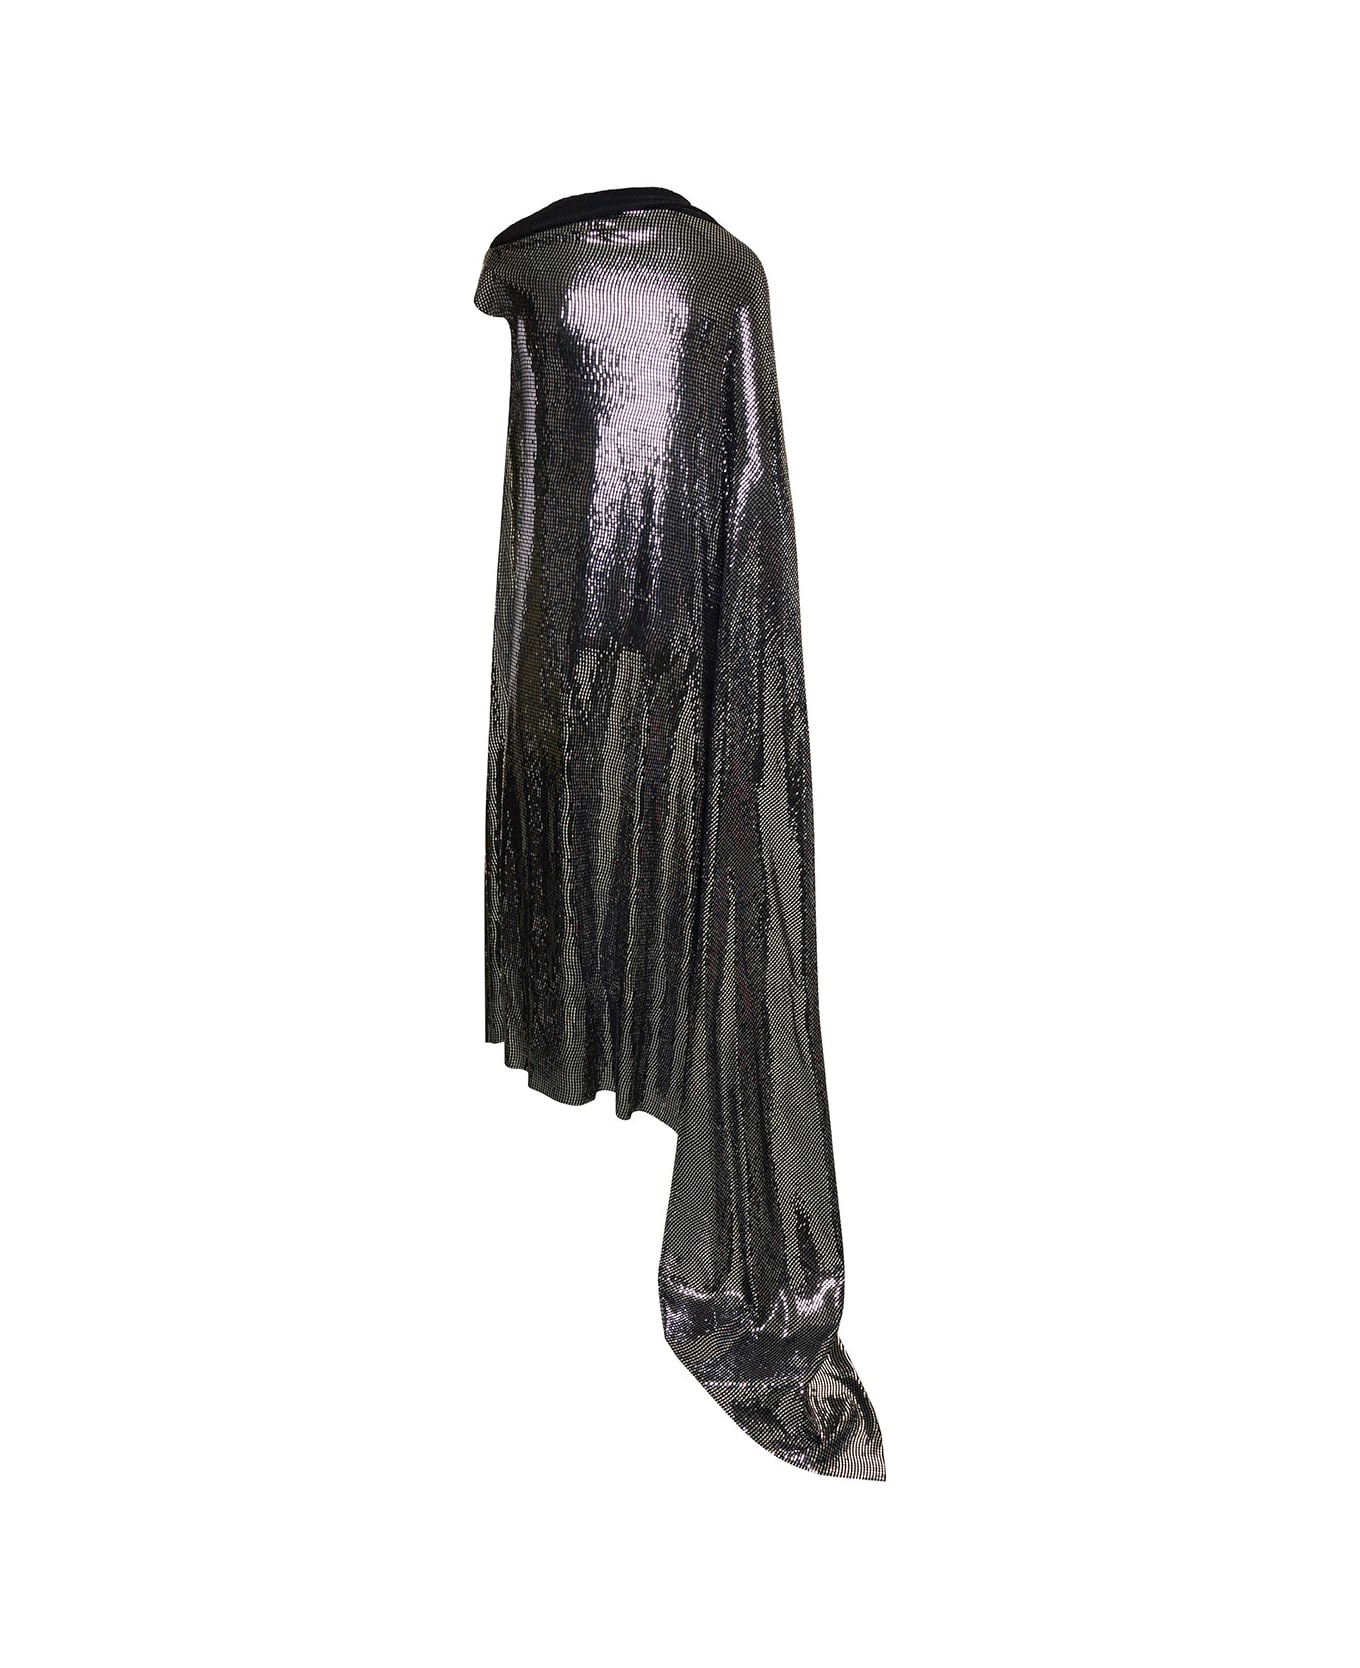 Balenciaga 'minimal' Black And Silver Draped Sleeveless Gown In Metallic Jersey Woman - Metallic ワンピース＆ドレス